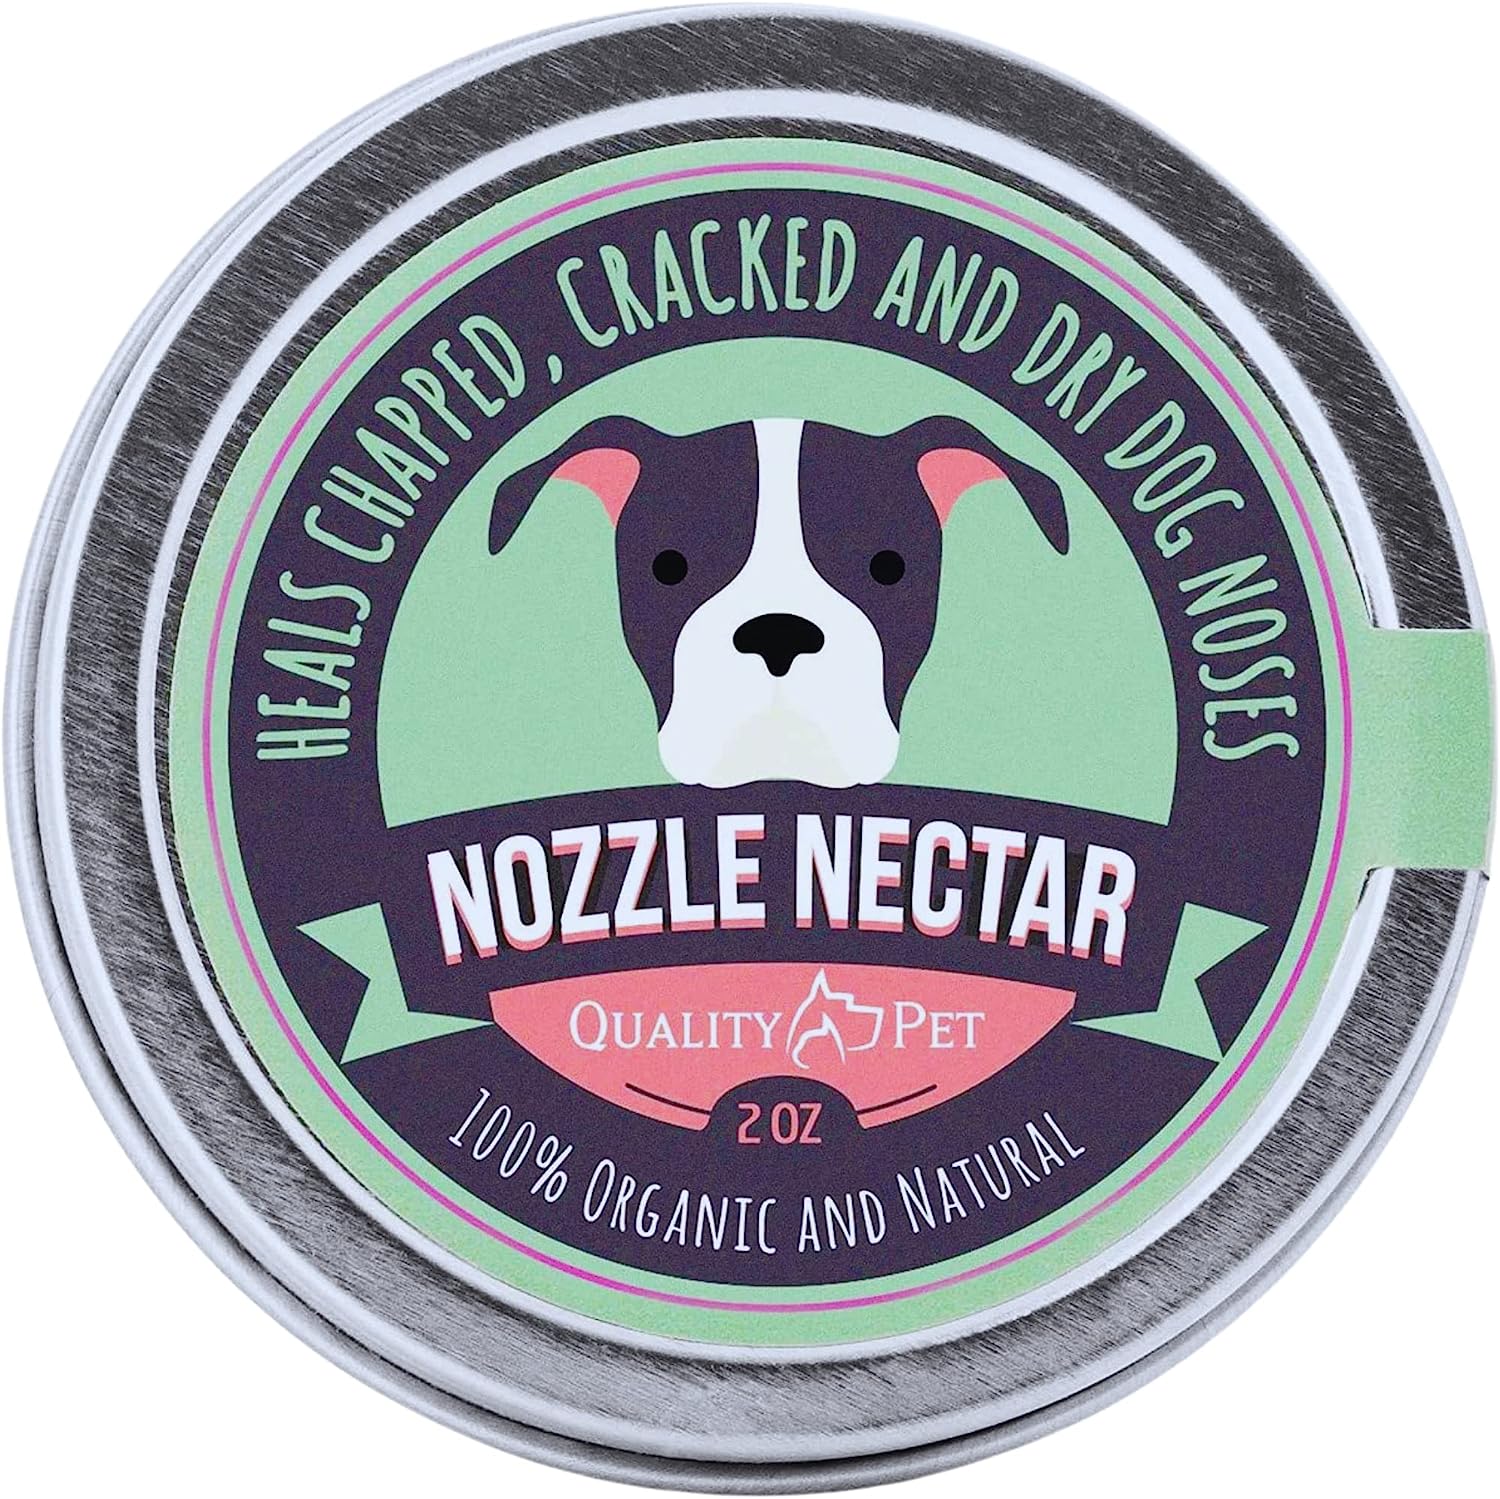 2. Nozzle Nectar Dog Nose Balm